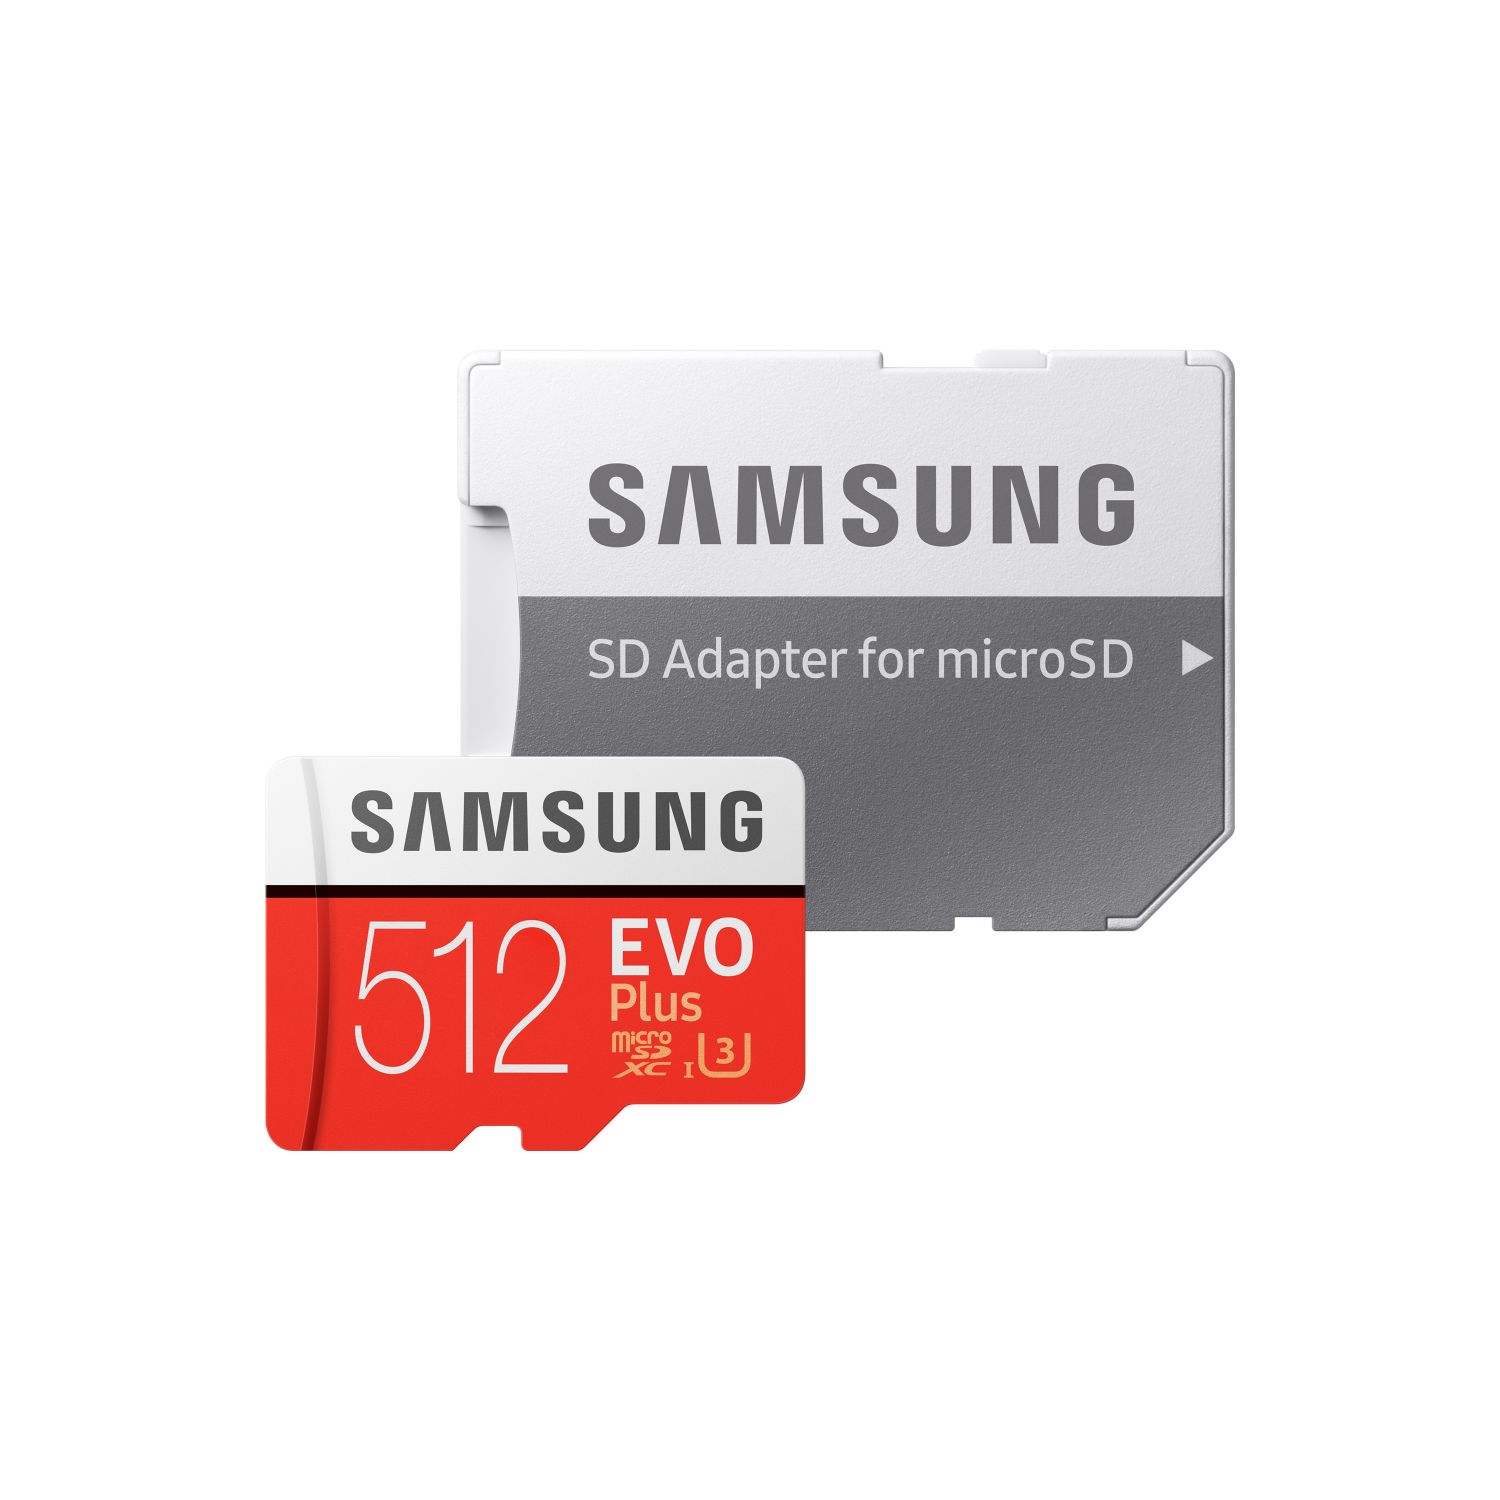 MB-MC512HA/EU - Micro SD Samsung 512Mb Clase 10 (MB-MC512HA/EU)